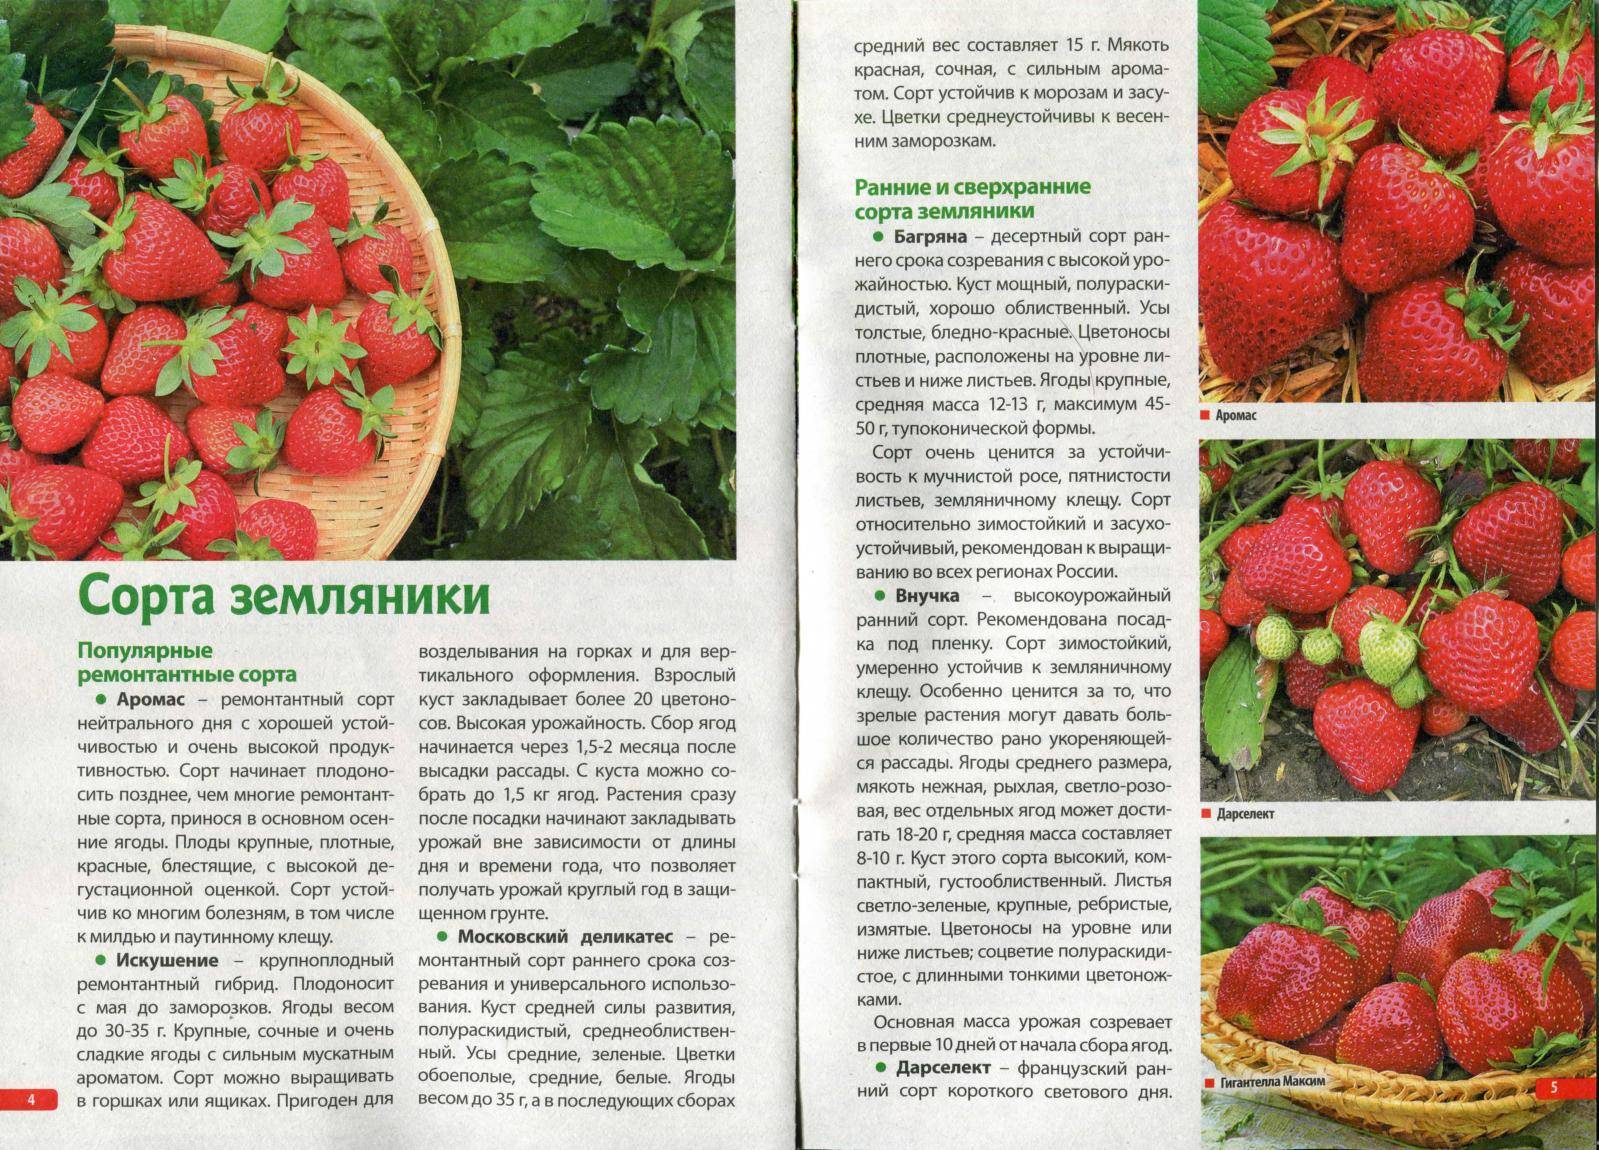 Клубника маршал: описание сорта, фото ягод, отзывы садоводов